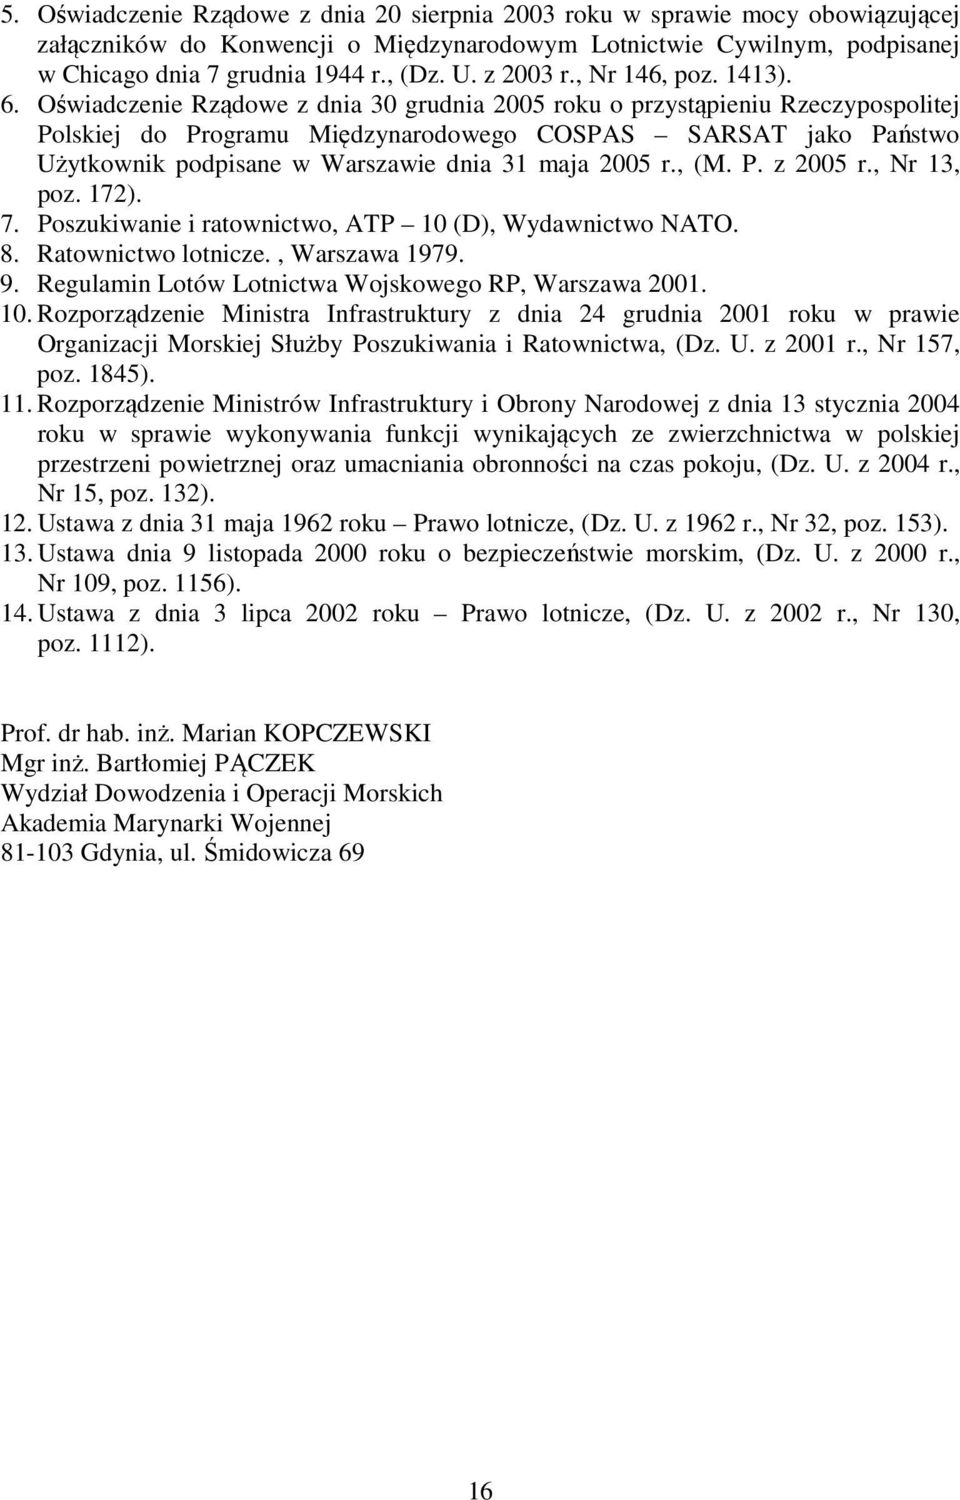 Oświadczenie Rządowe z dnia 30 grudnia 2005 roku o przystąpieniu Rzeczypospolitej Polskiej do Programu Międzynarodowego COSPAS SARSAT jako Państwo Użytkownik podpisane w Warszawie dnia 31 maja 2005 r.